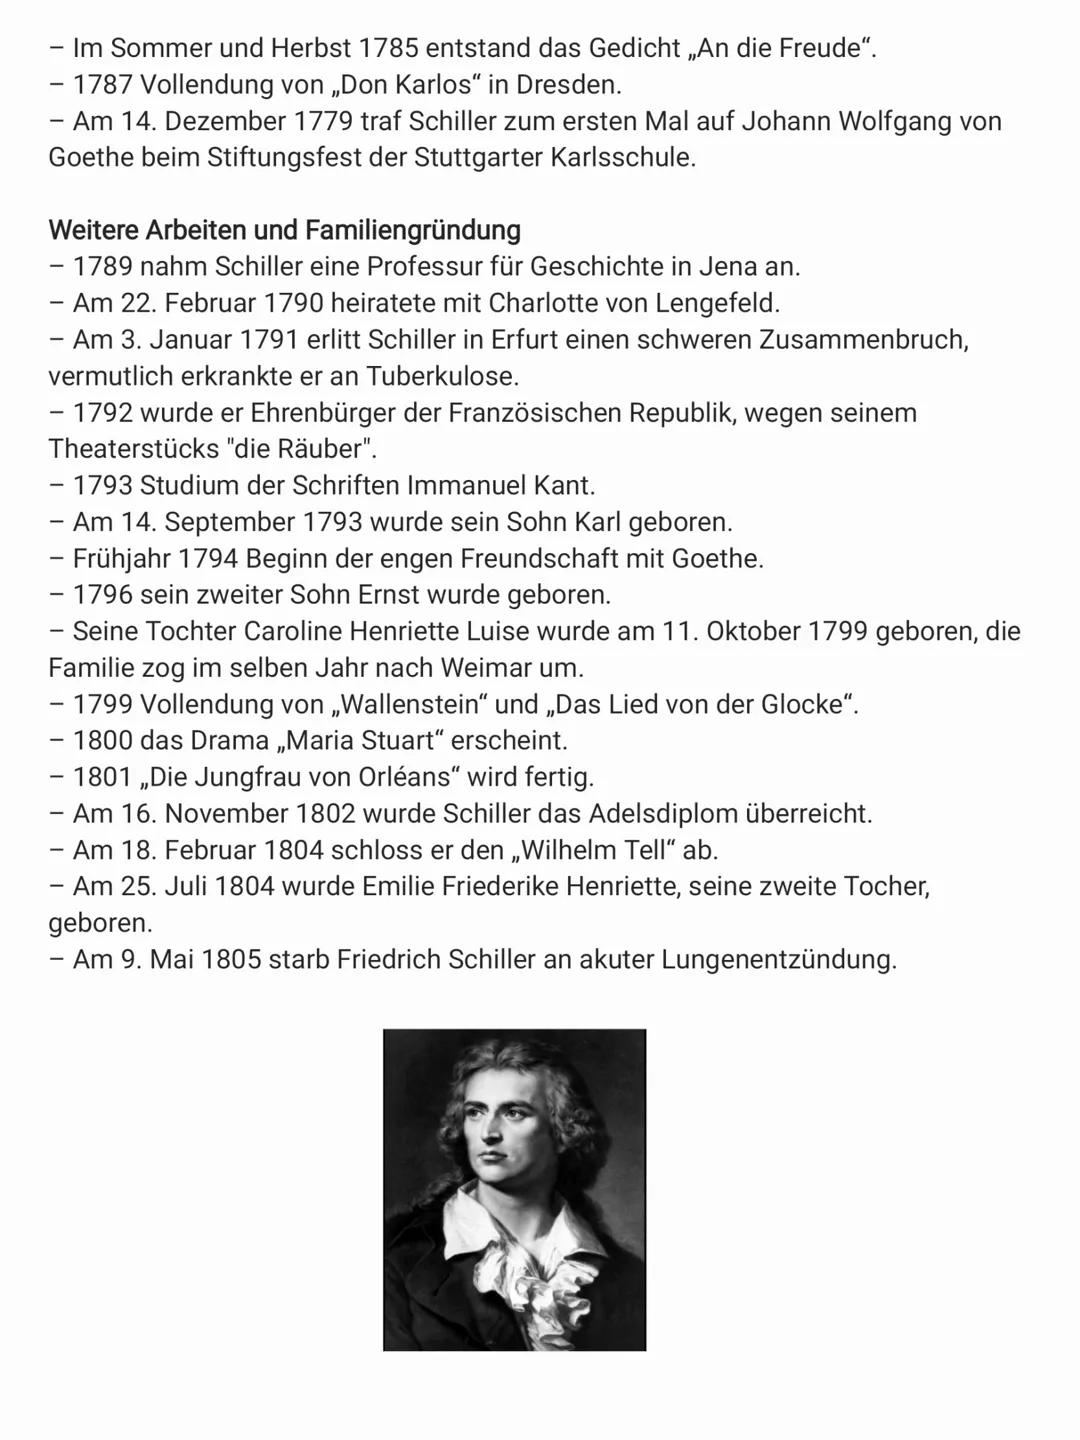 Steckbrief - Fredrich Schiller
Vorname: Johann Christoph Friedrich
Name: von Schiller
geboren am: 10. November 1759
Beruf: Militärarzt, Dich